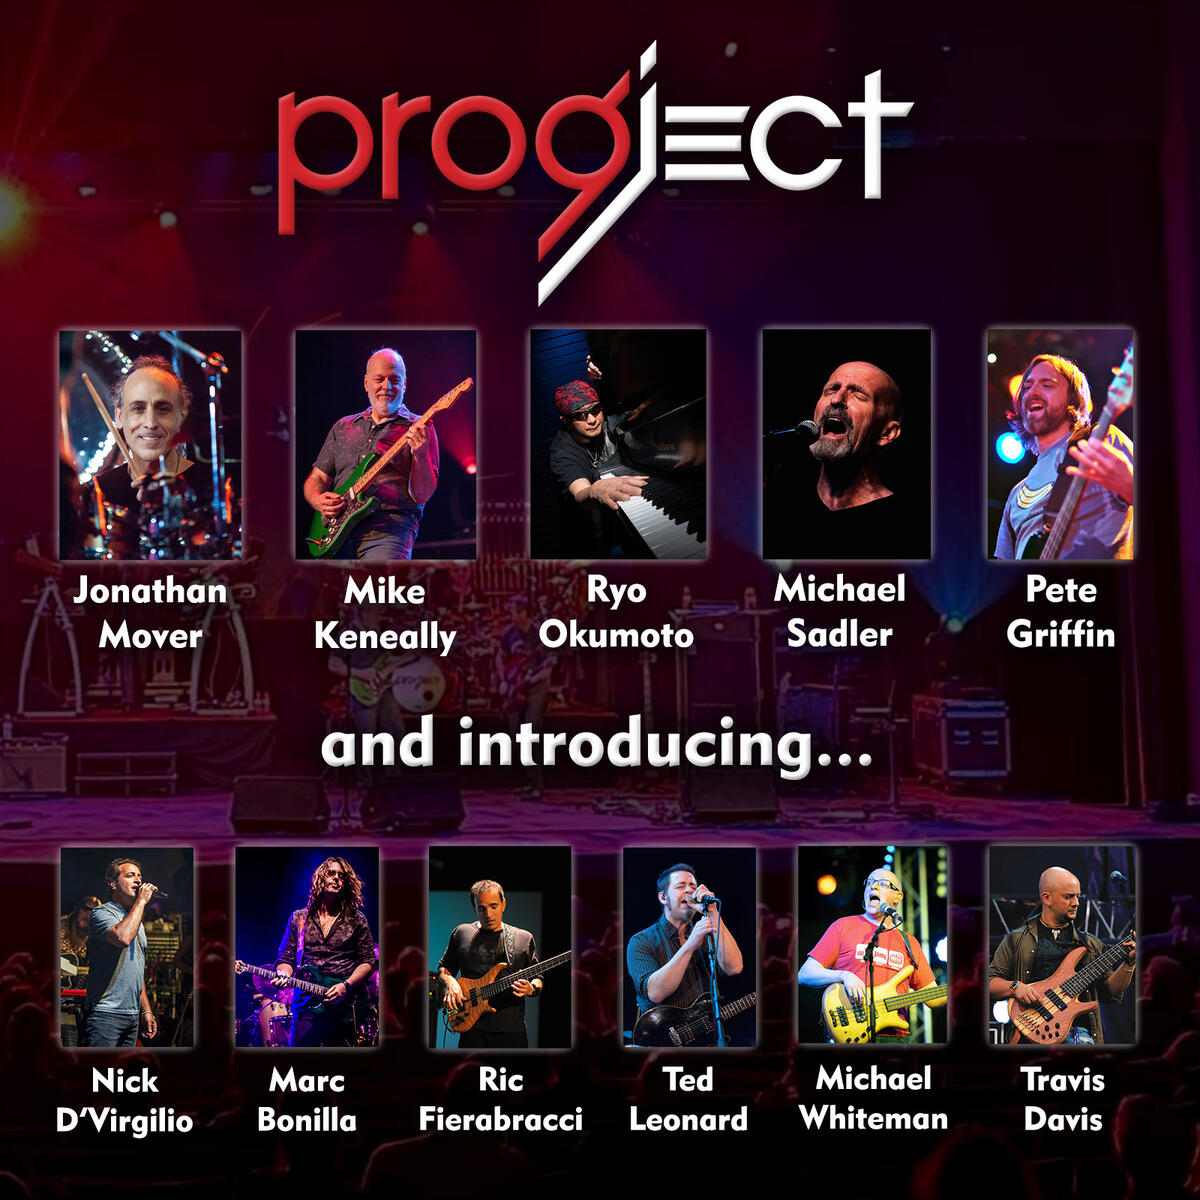 ProgJect's Expansion Project